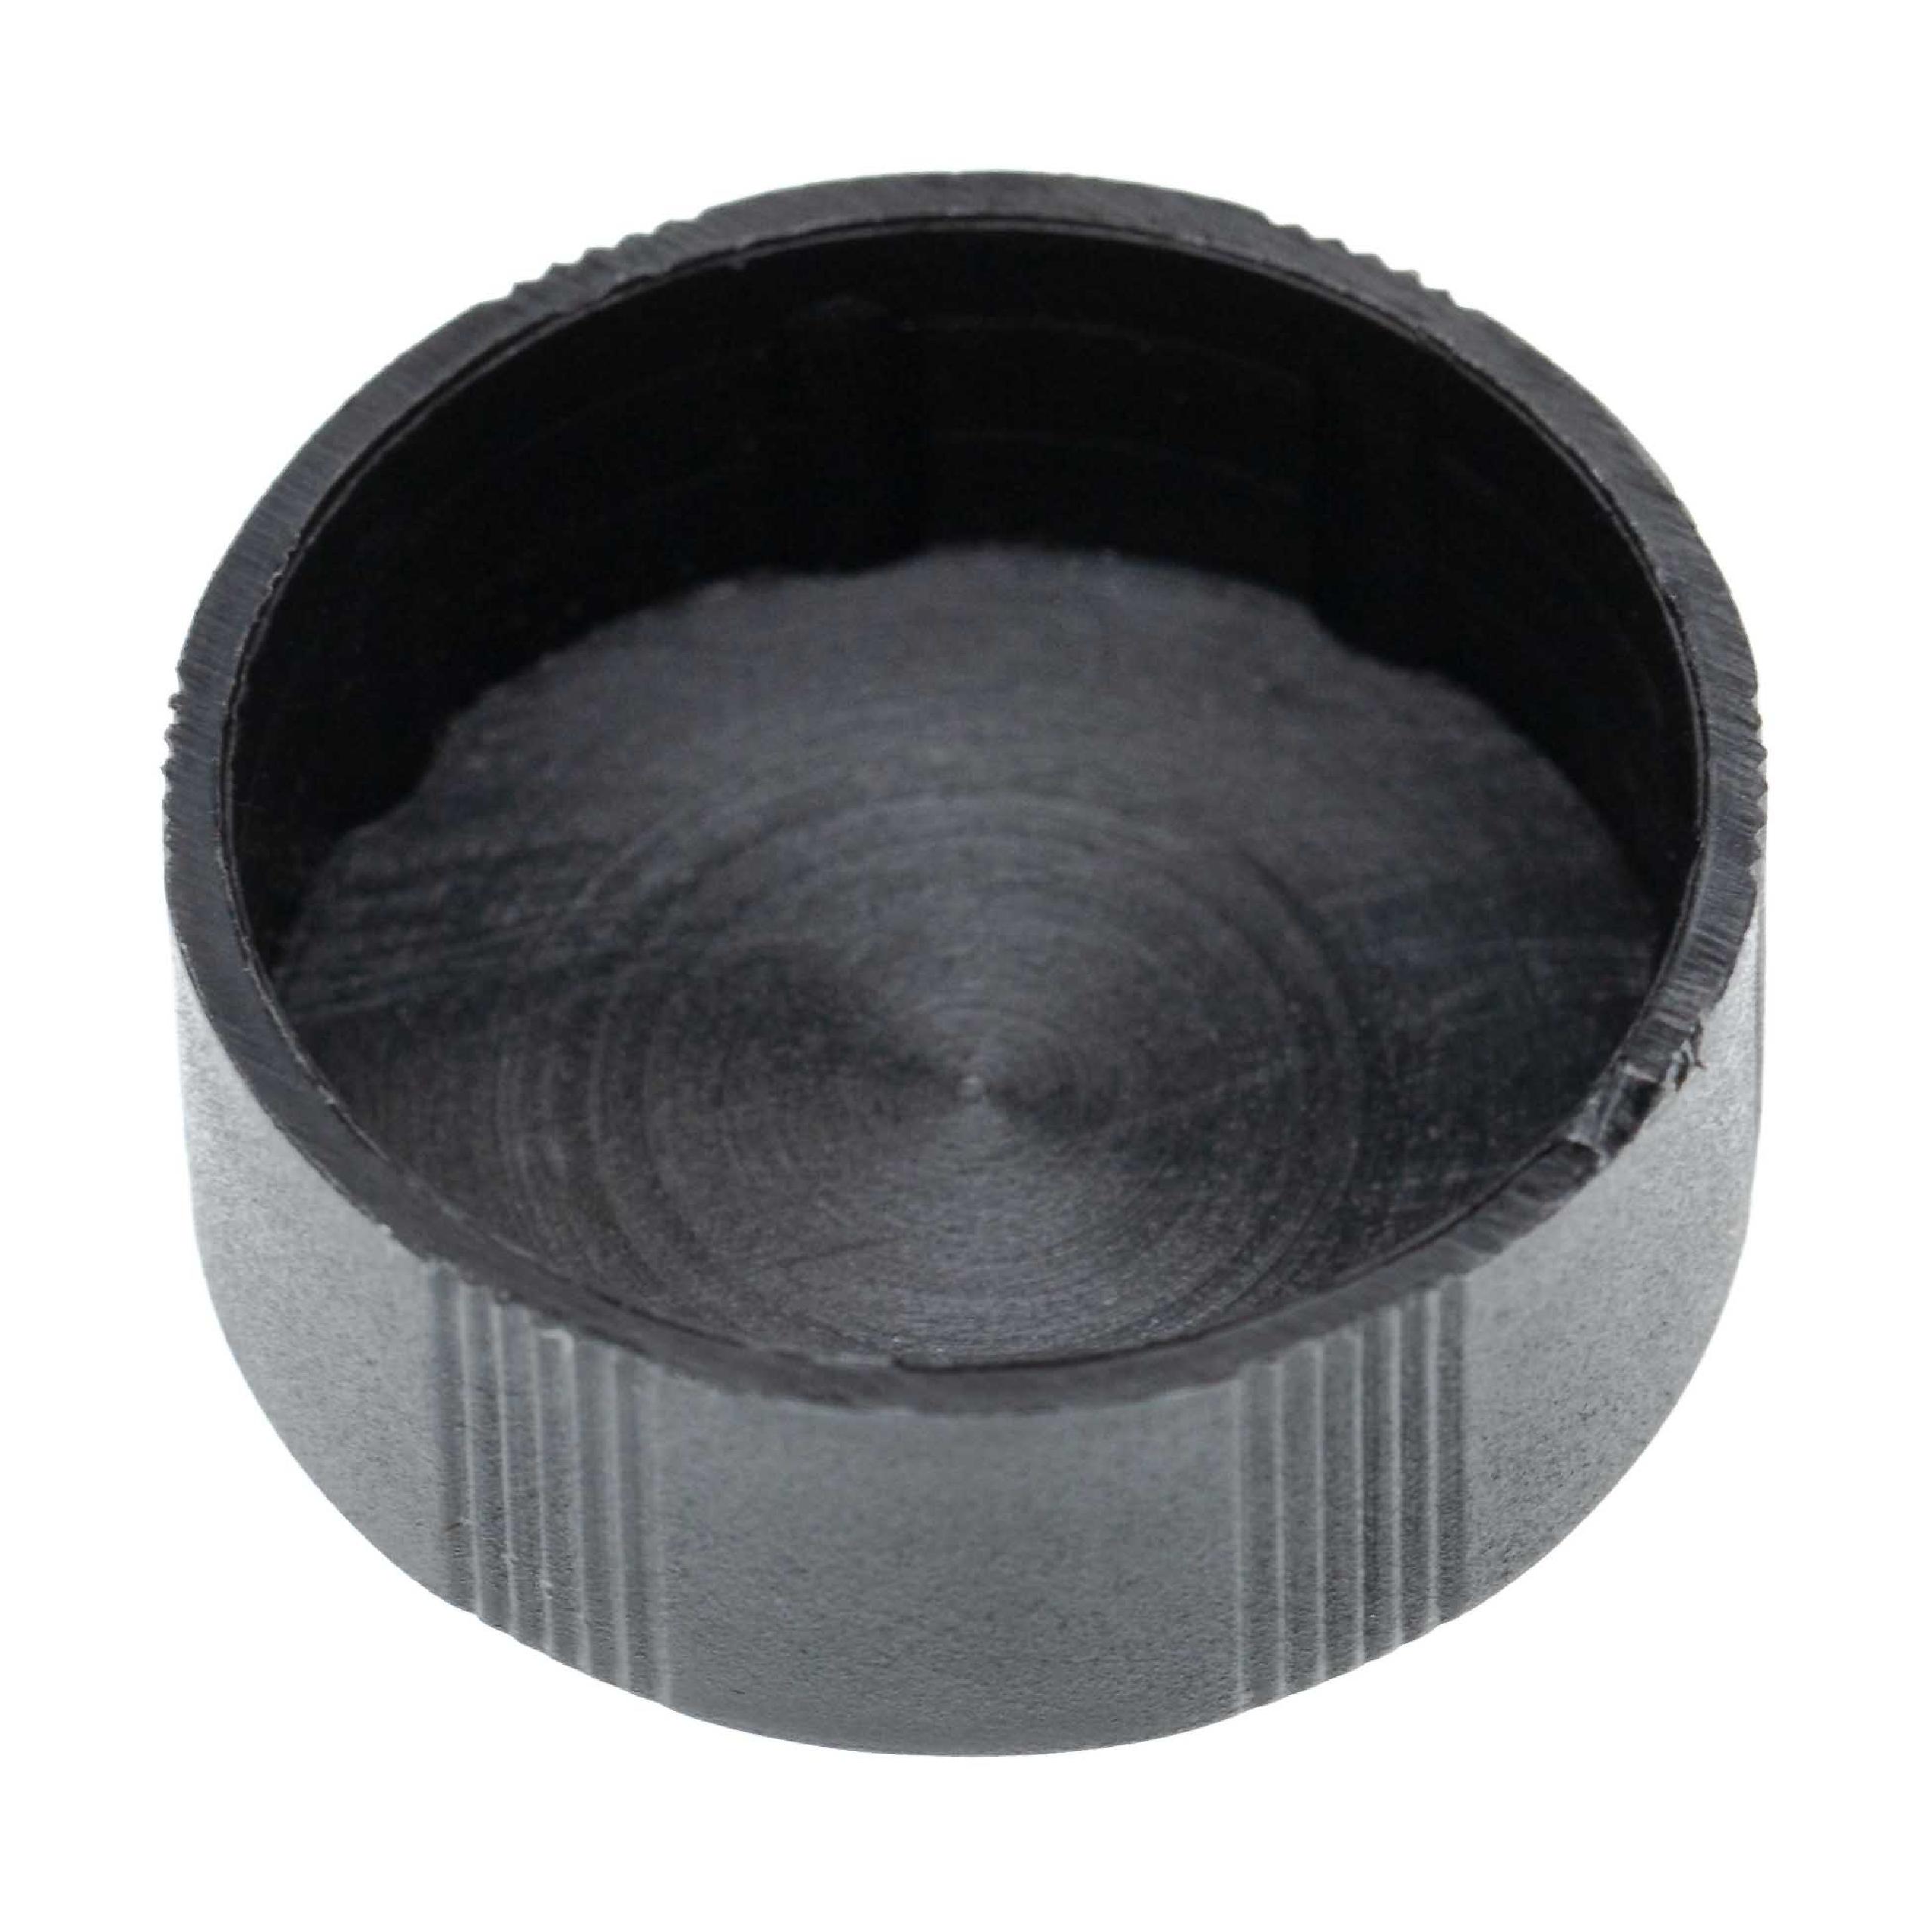 2x Objektivdeckel passend für Fernglas-Objektive mit 30 mm Durchmesser - Schwarz, Aufsteckbar